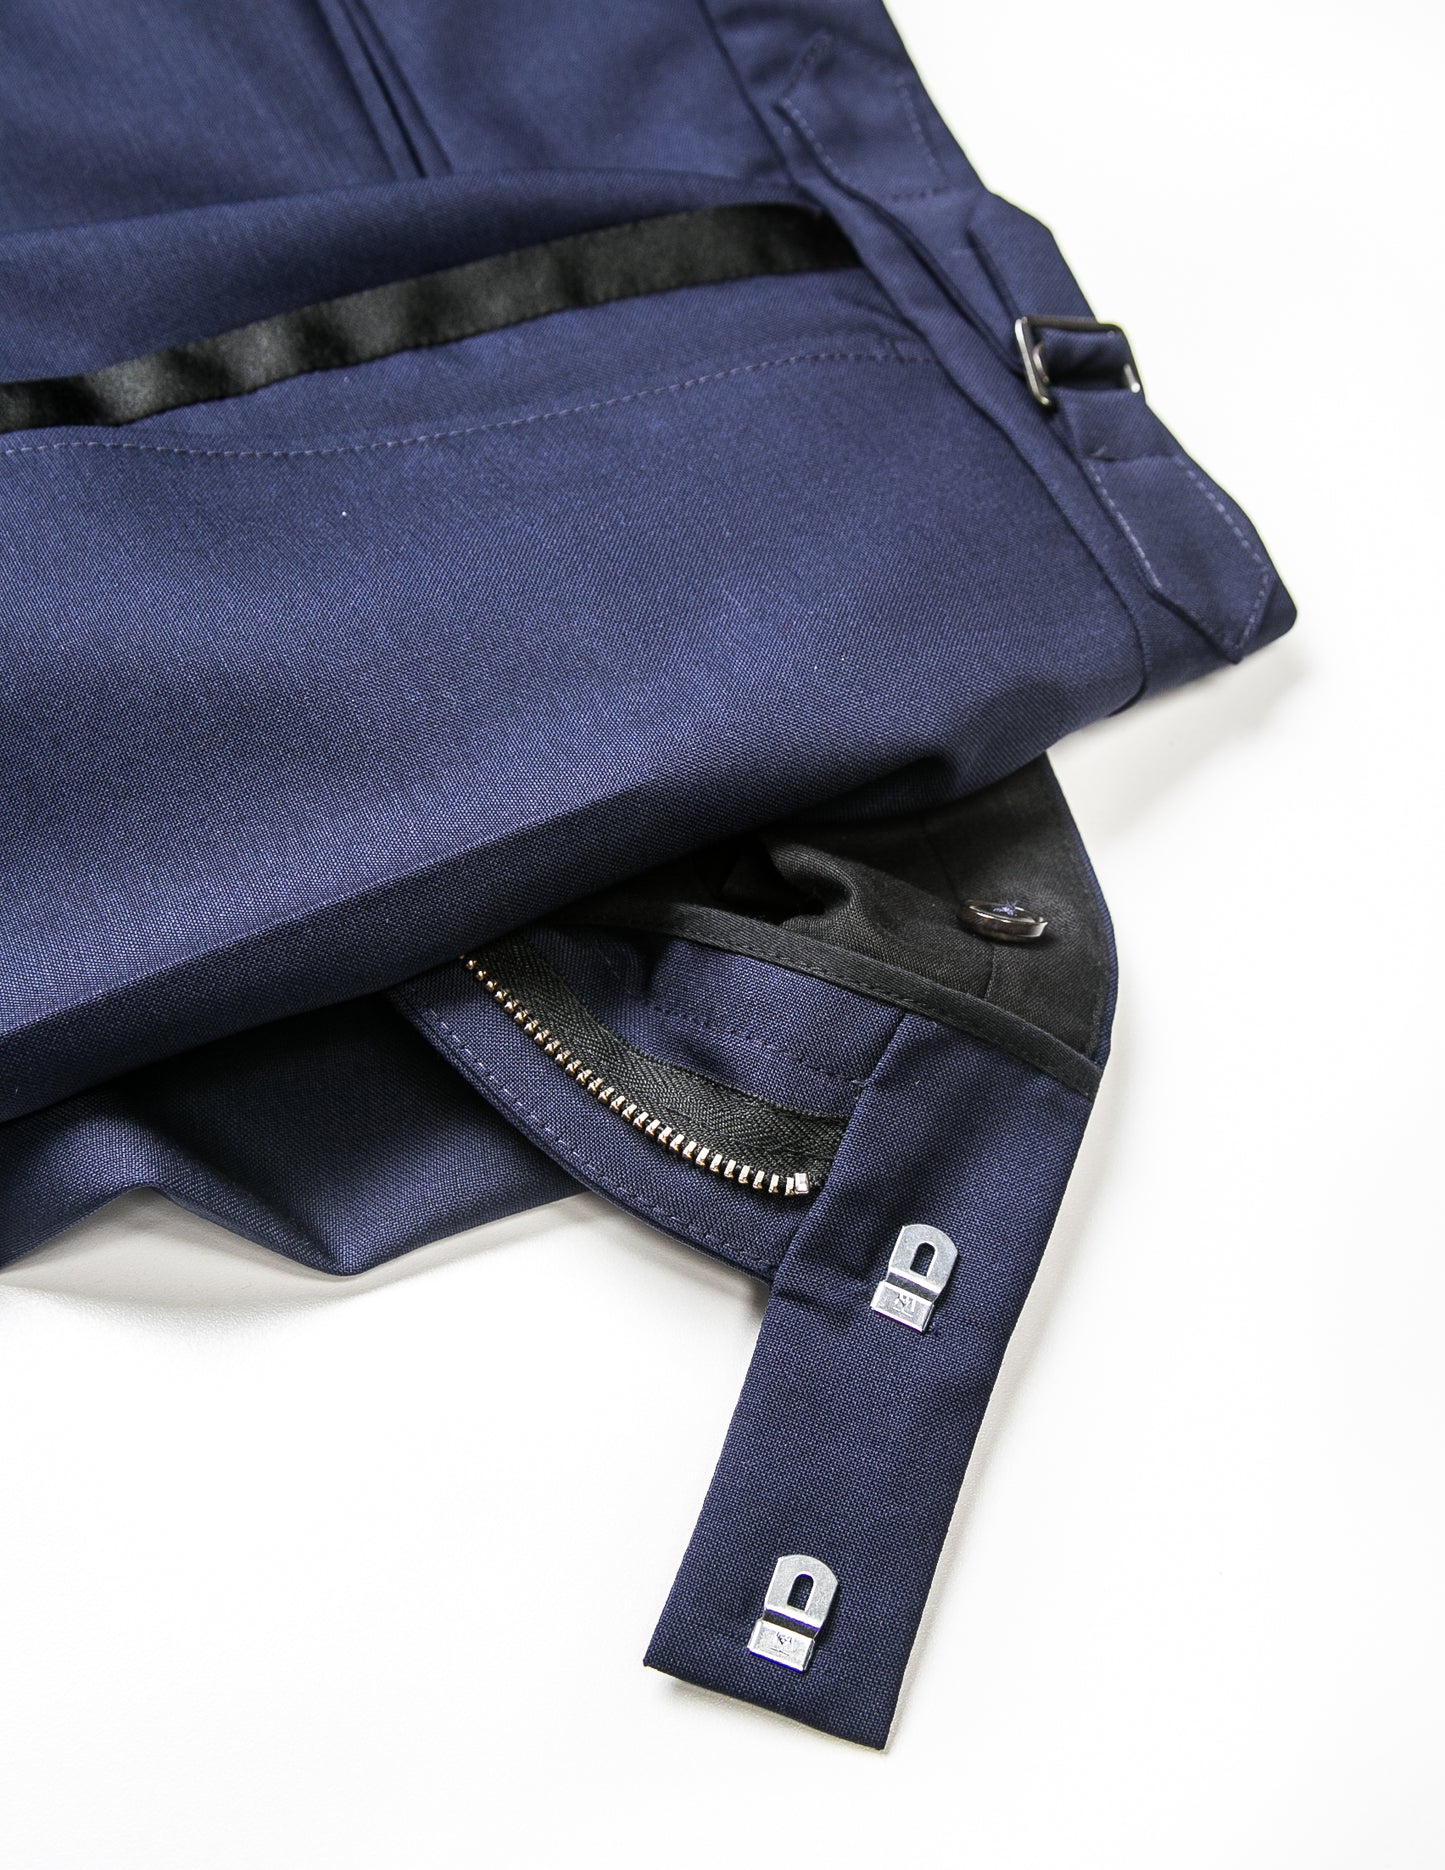 BKT50 Tuxedo Trouser in Wool / Mohair - Ink Blue with Grosgrain Stripe